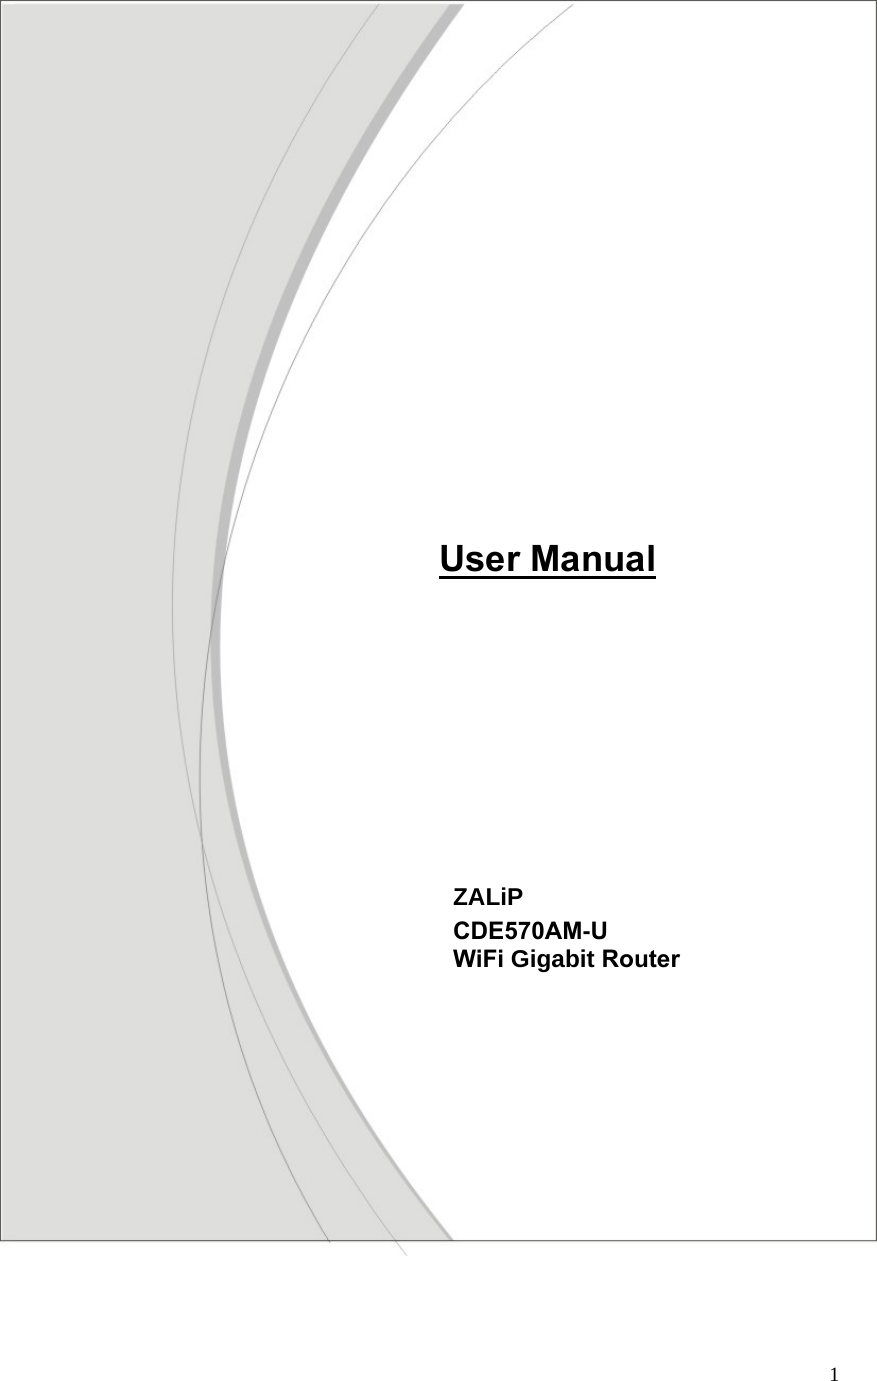  1                                            ZALiP CDE570AM-U   WiFi Gigabit Router   User Manual 